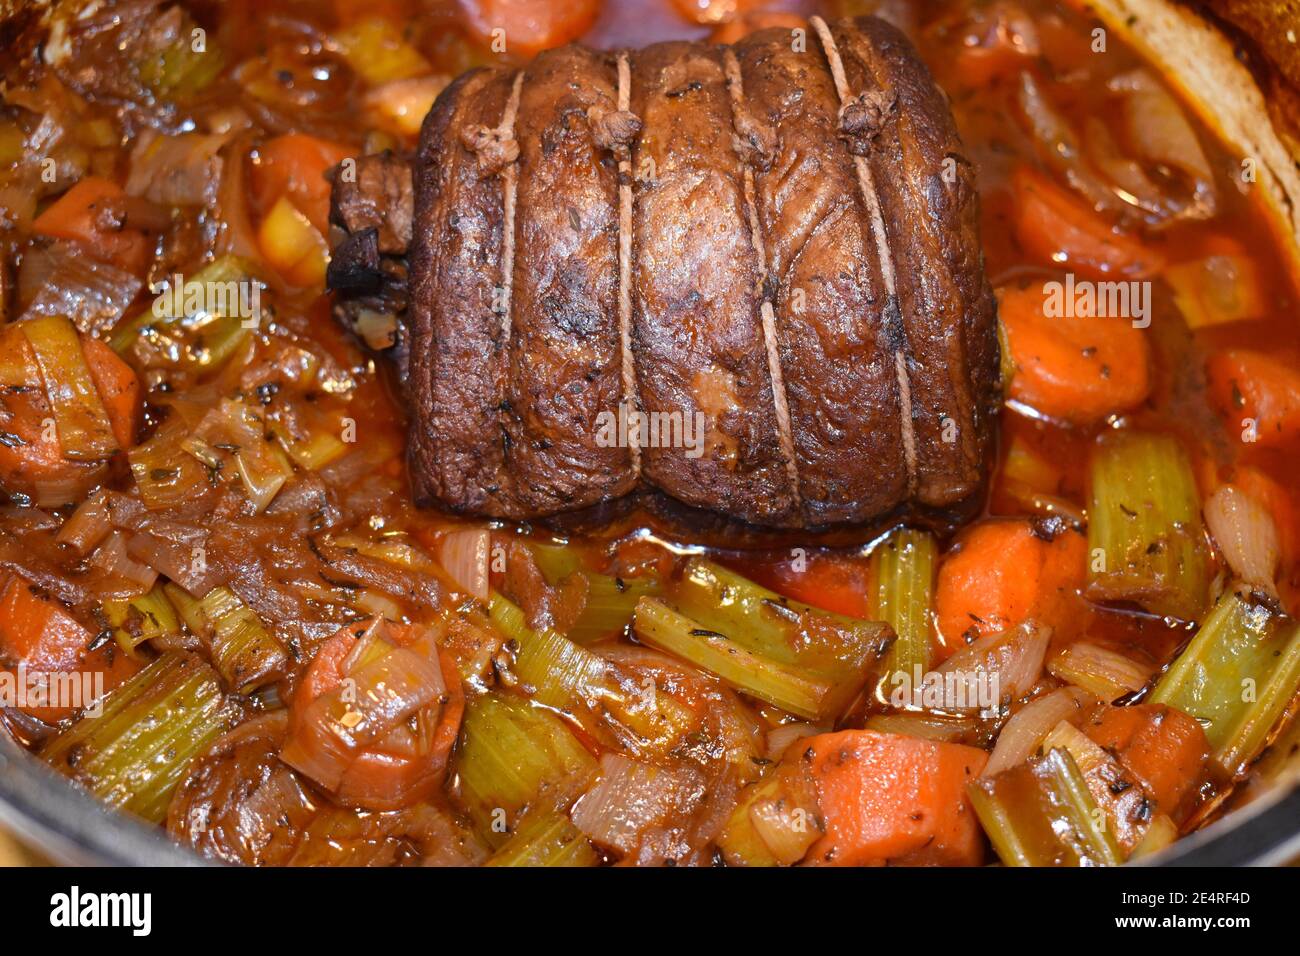 Britisches langsam gekochtes Rindfleisch brisket Auflauf mit Karotten  Sellerie Zwiebeln bay Leaf Briskets sind billige Rindfleisch geschnitten  perfekt für lange Kochen macht Fleisch zart Stockfotografie - Alamy